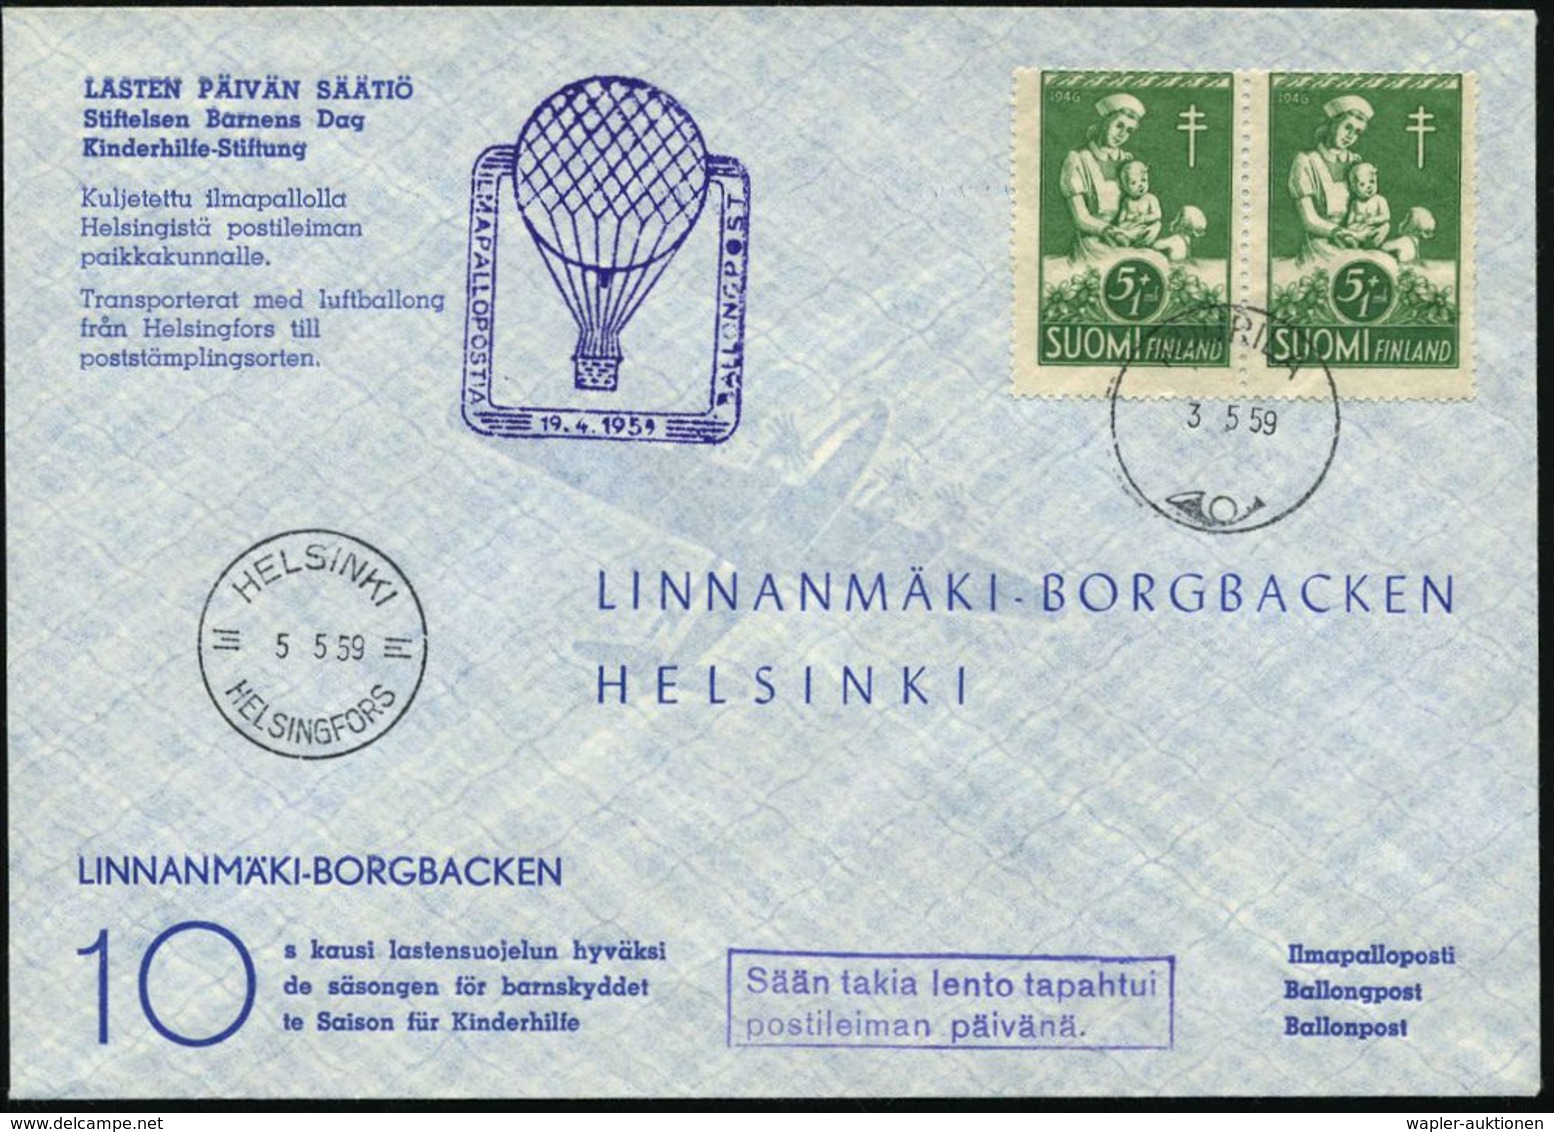 TUBERKULOSE / TBC-VORSORGE : FINNLAND 1959 (3.5.) 5 Mk + 1Mk. Anti-Tuberkulose, Reine MeF: Paar = Kinder-Krankenschester - Maladies